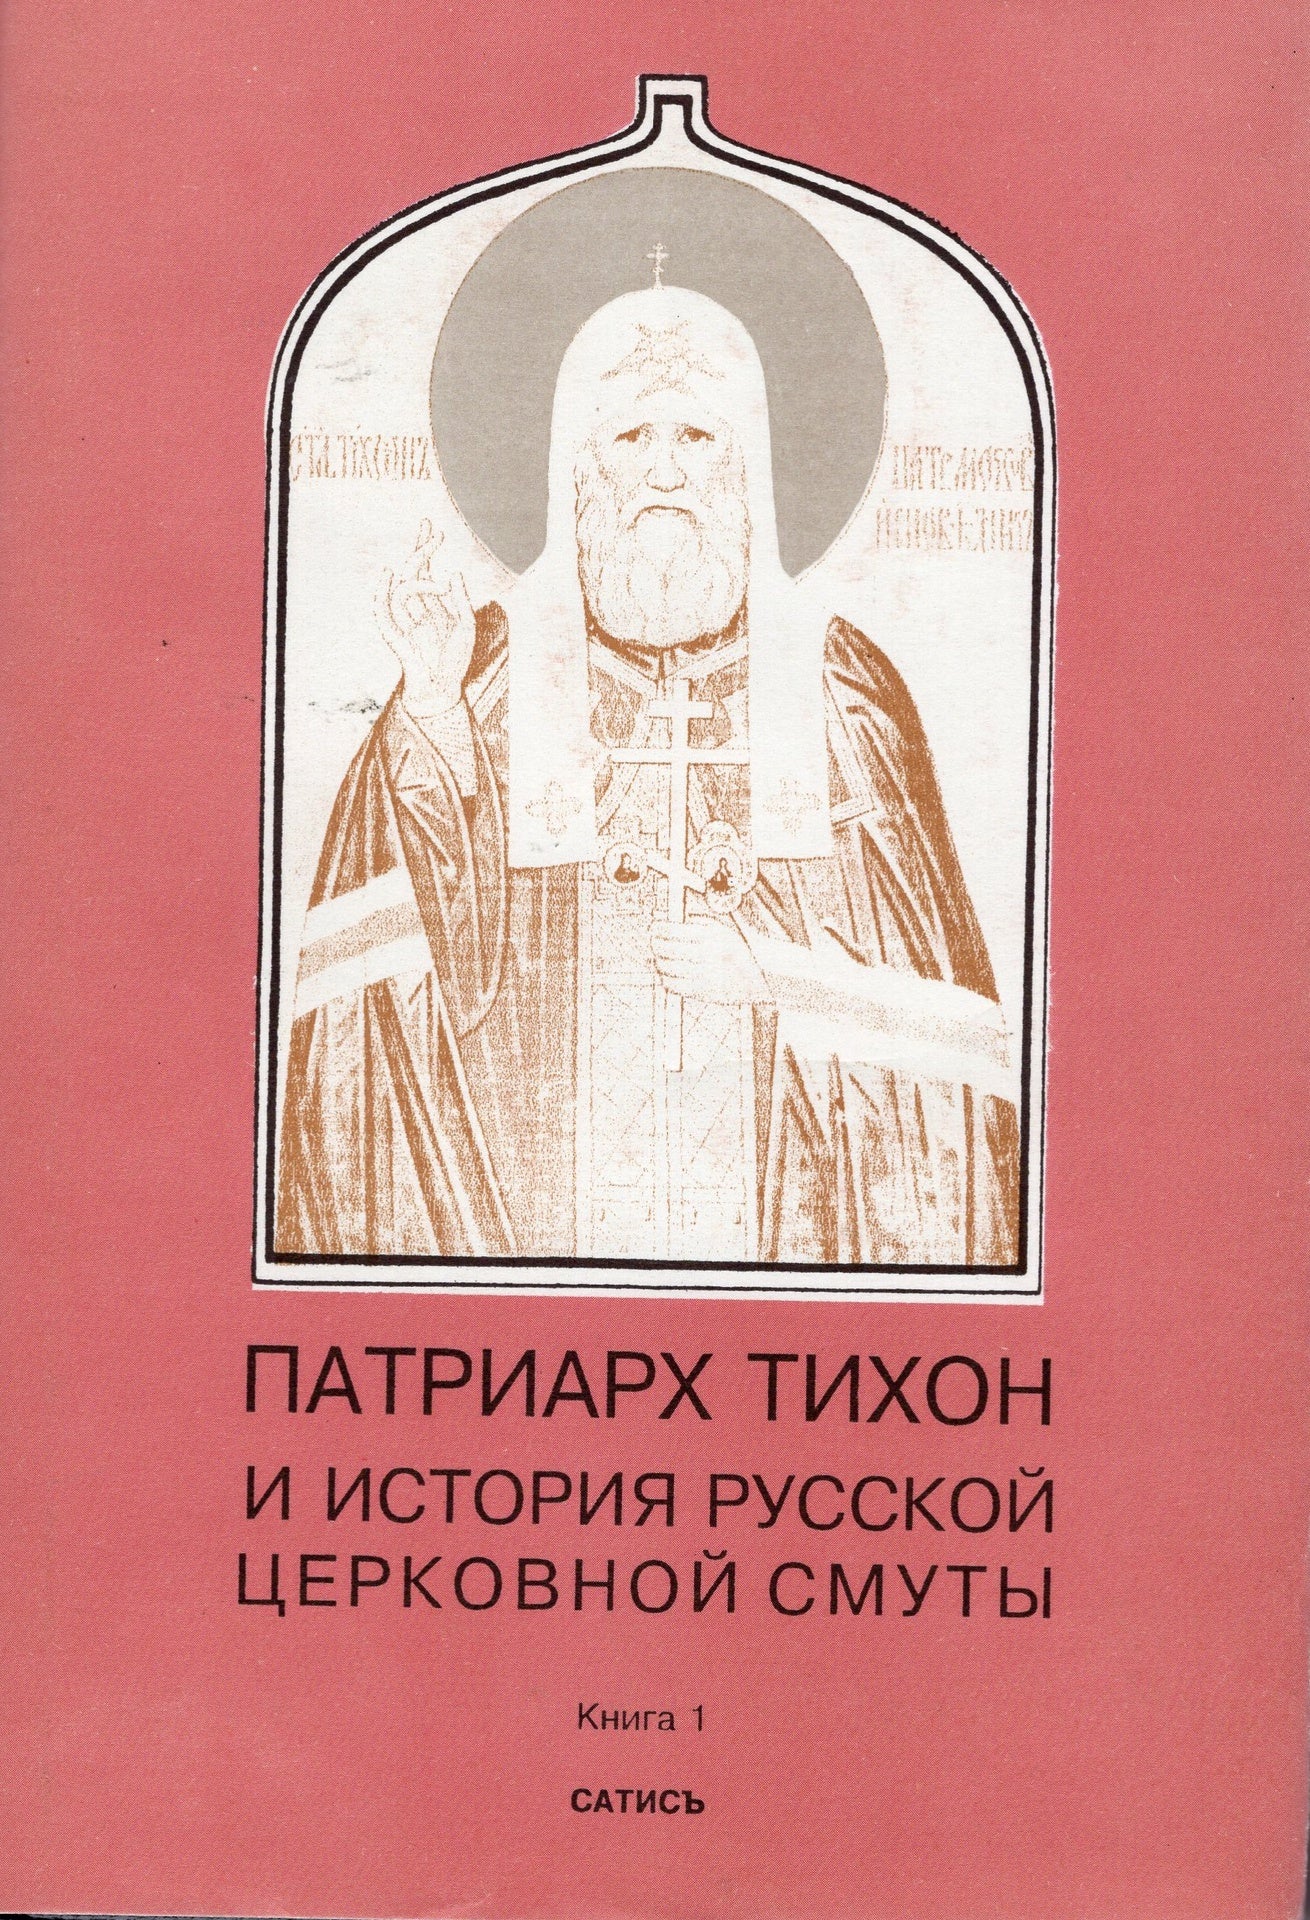 Патриарх Тихон и история Русской Церковной смуты